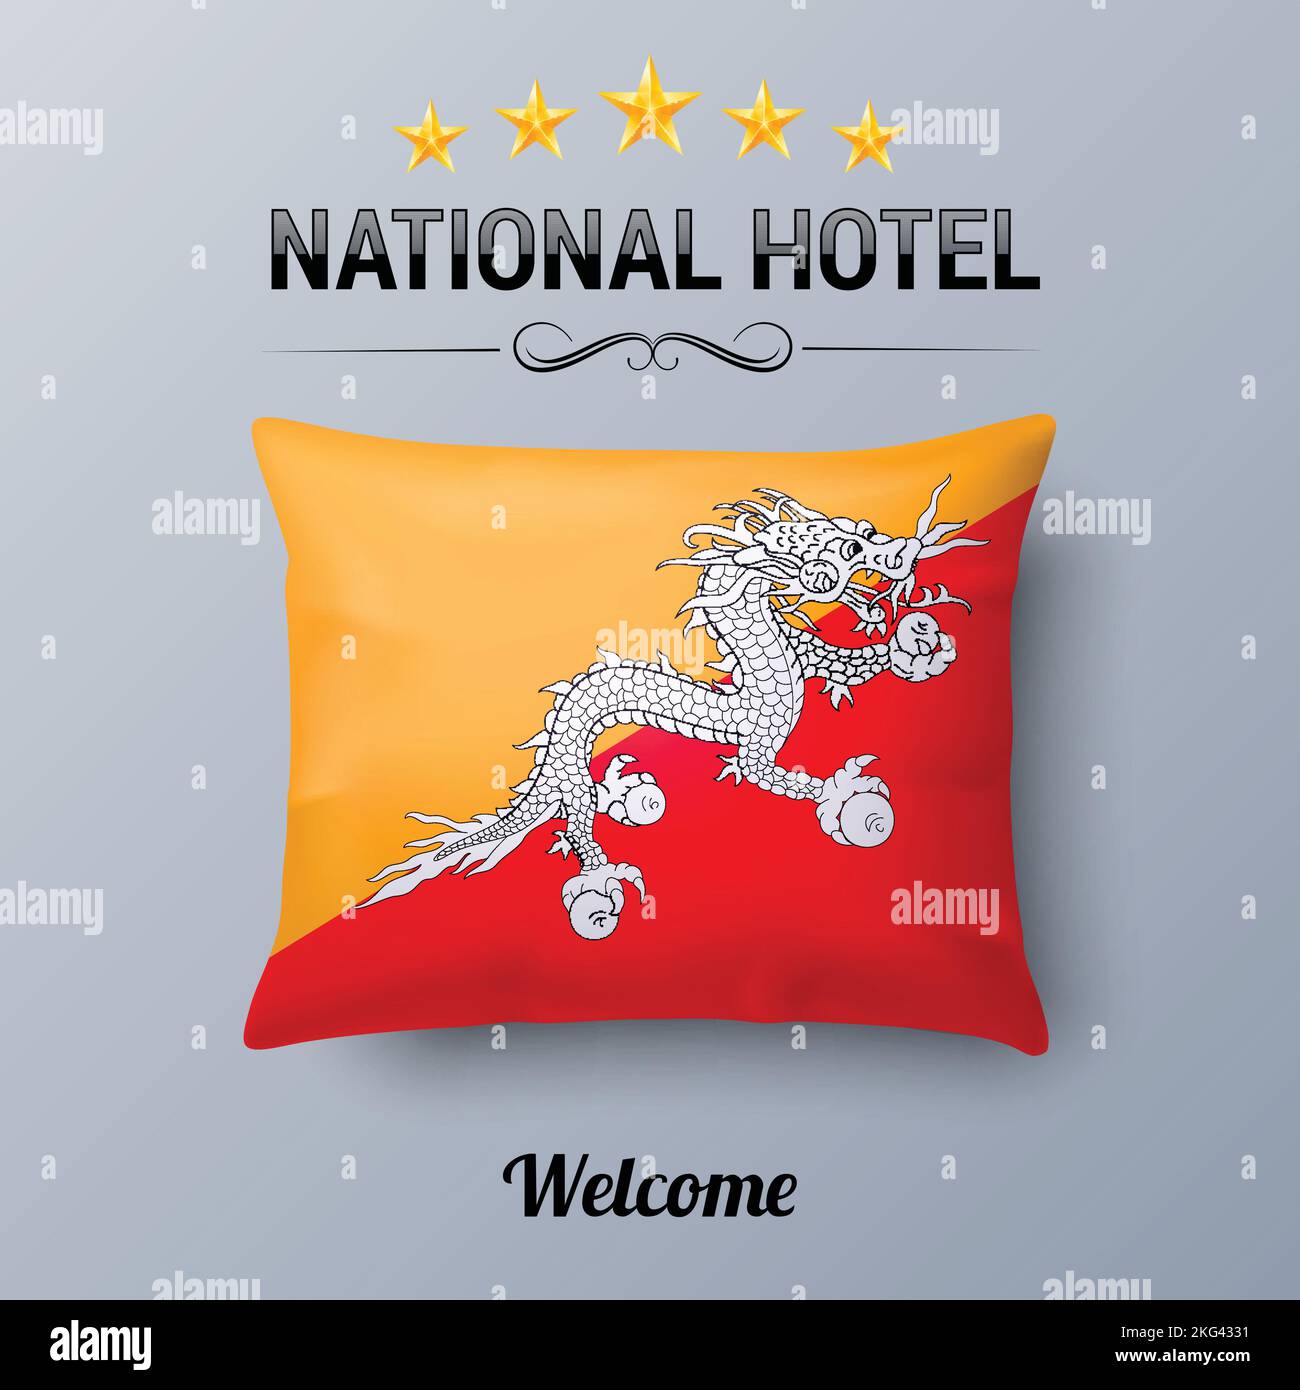 Oreiller réaliste et drapeau du Bhoutan en tant que Symbol National Hotel. Couvre-oreiller drapeau avec drapeau bhoutanais Illustration de Vecteur